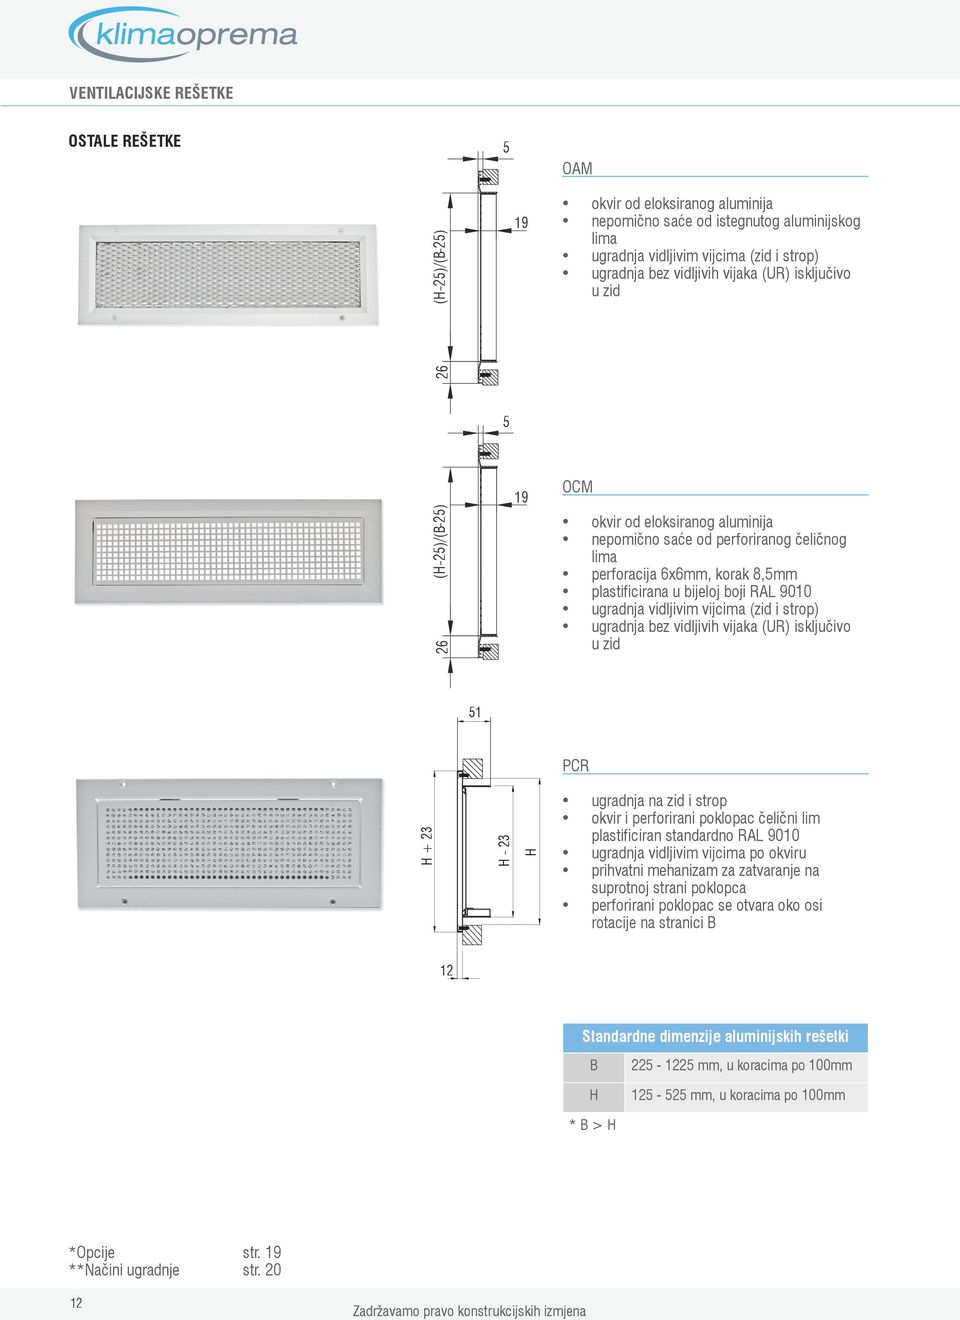 ugradnja bez vidljivih vijaka (UR) isključivo u zid 1 PCR + ugradnja na zid i strop okvir i perforirani poklopac čelični lim plastificiran standardno RAL 90 ugradnja vidljivim vijcima po okviru